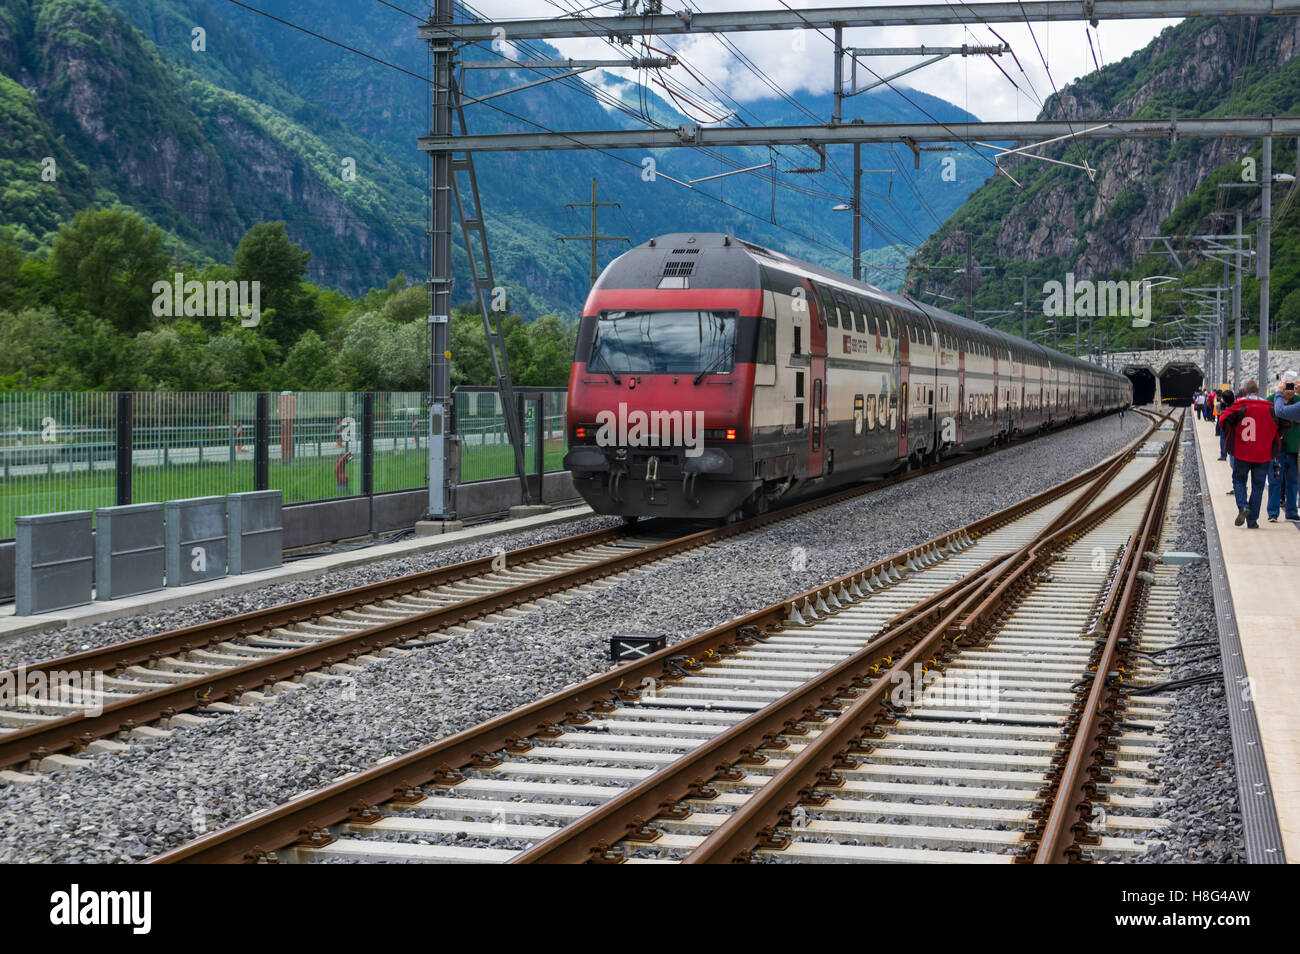 IC 2000 CFF en direction nord, double-decker train de passagers entrant dans le portail sud du 57km de long tunnel de base du Gothard. Pollegio, Tessin, Suisse. Banque D'Images